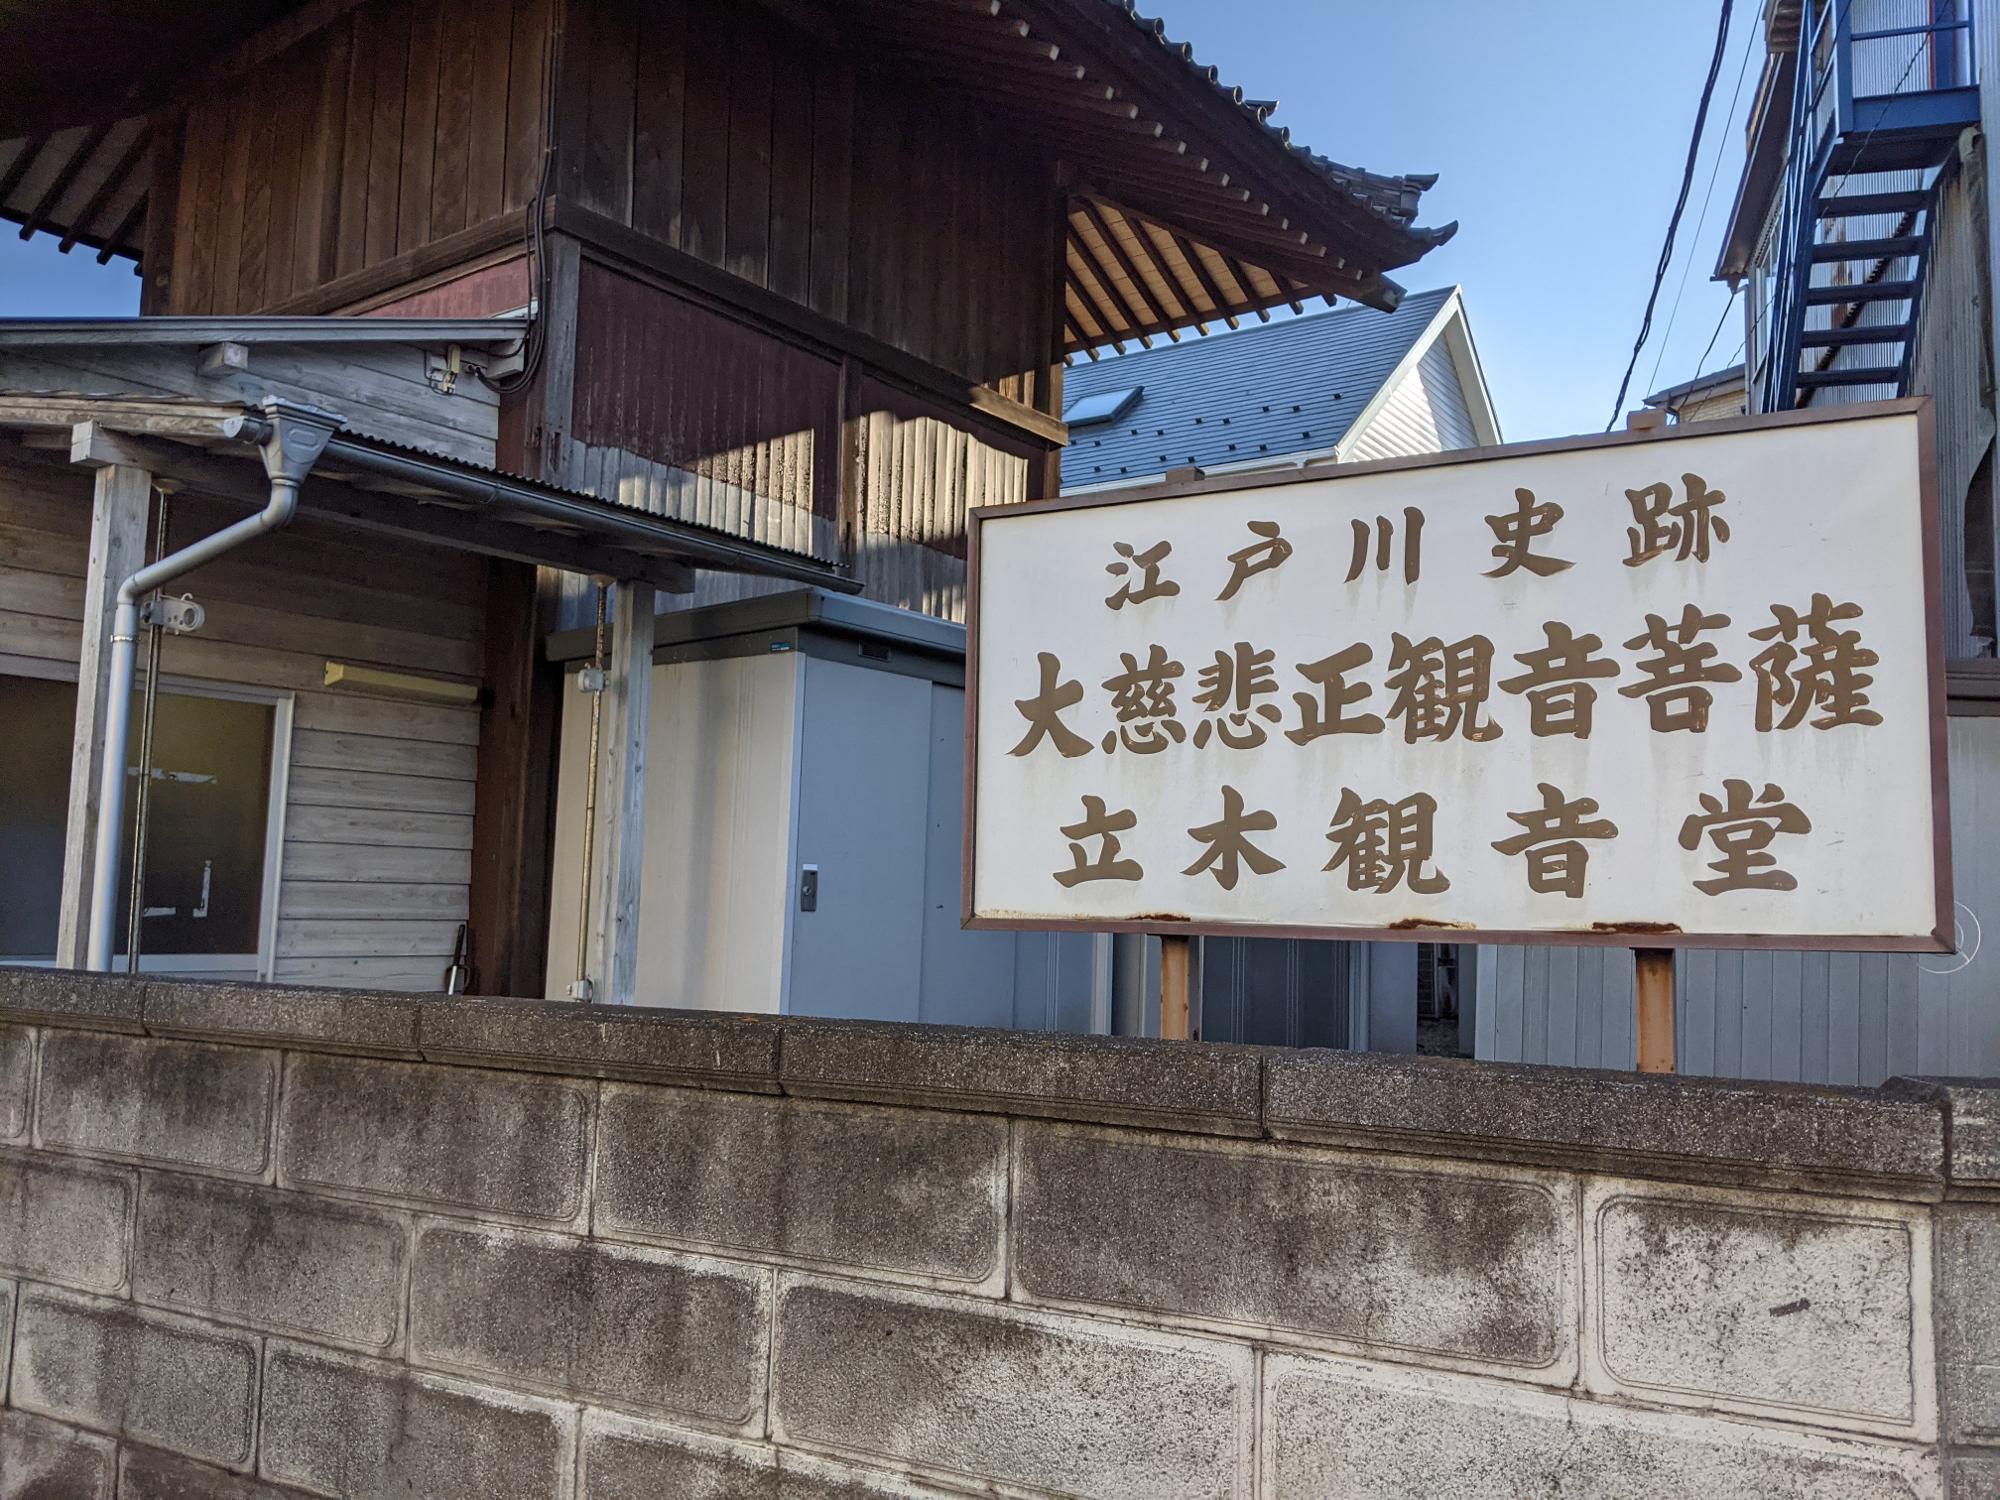 「ネコヤベーカリー」がある江戸川史跡、立木観音堂の看板